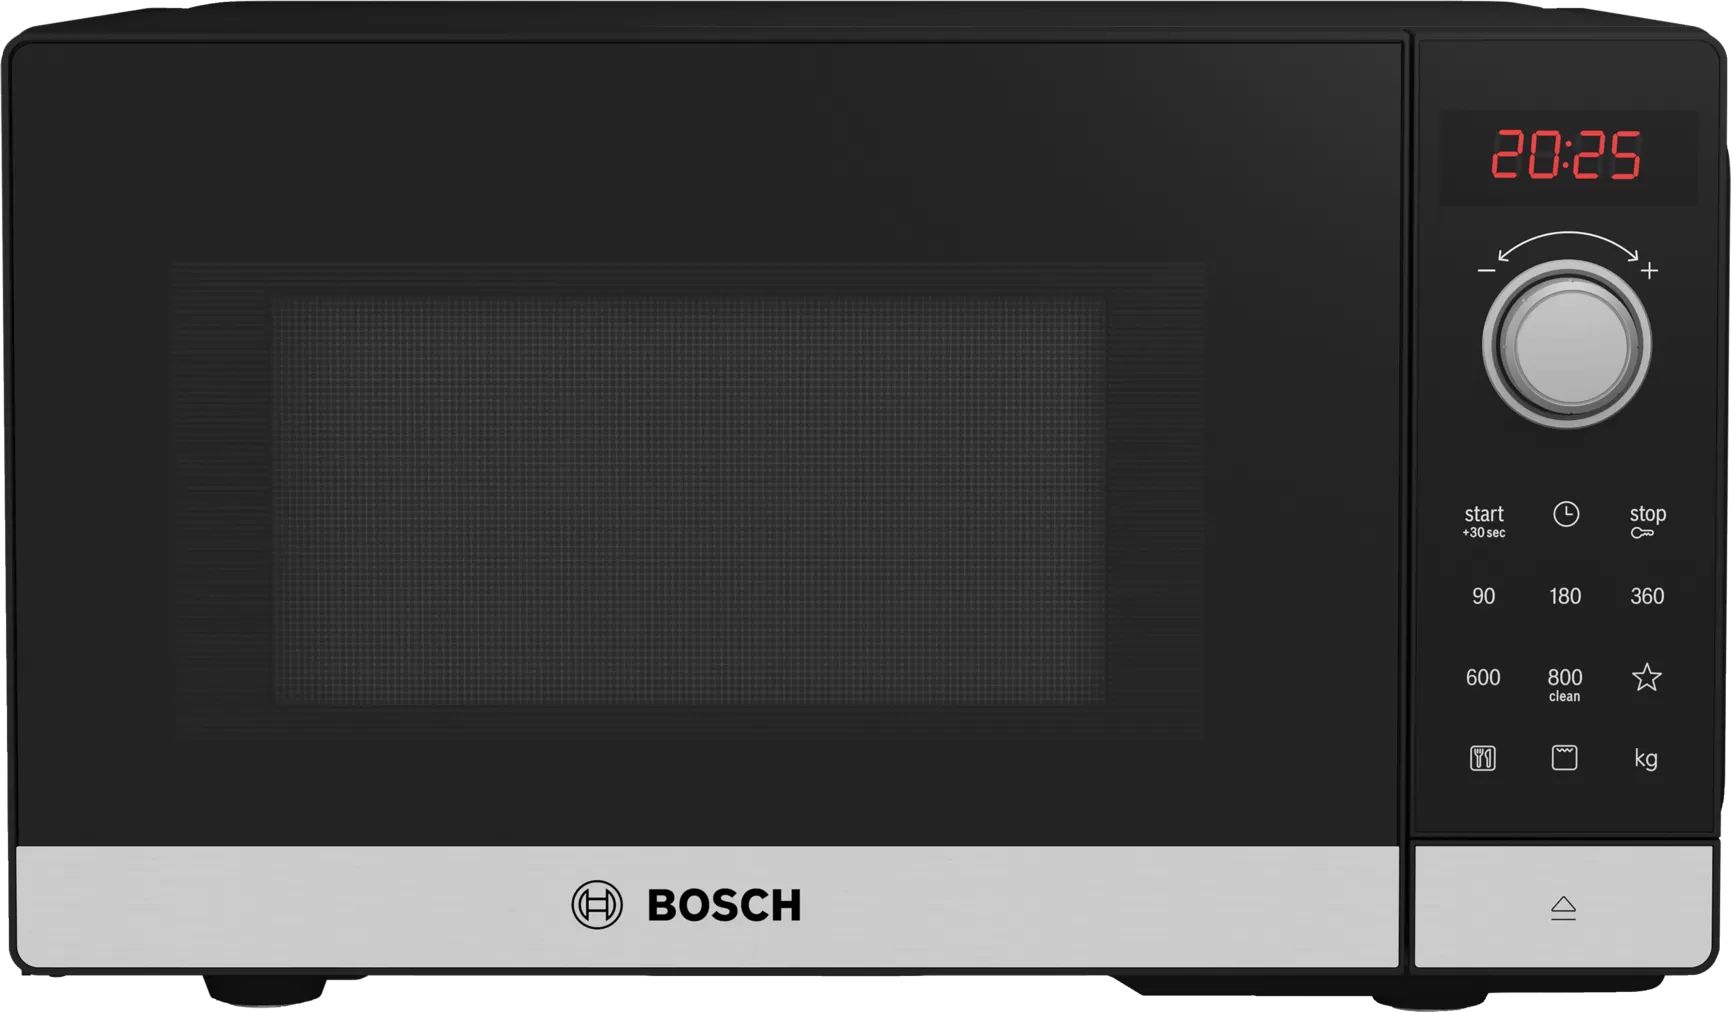 Микроволновая печь соло Bosch FEL023MS2 черный, серебристый микроволновая печь соло pioneer mw200m серебристый